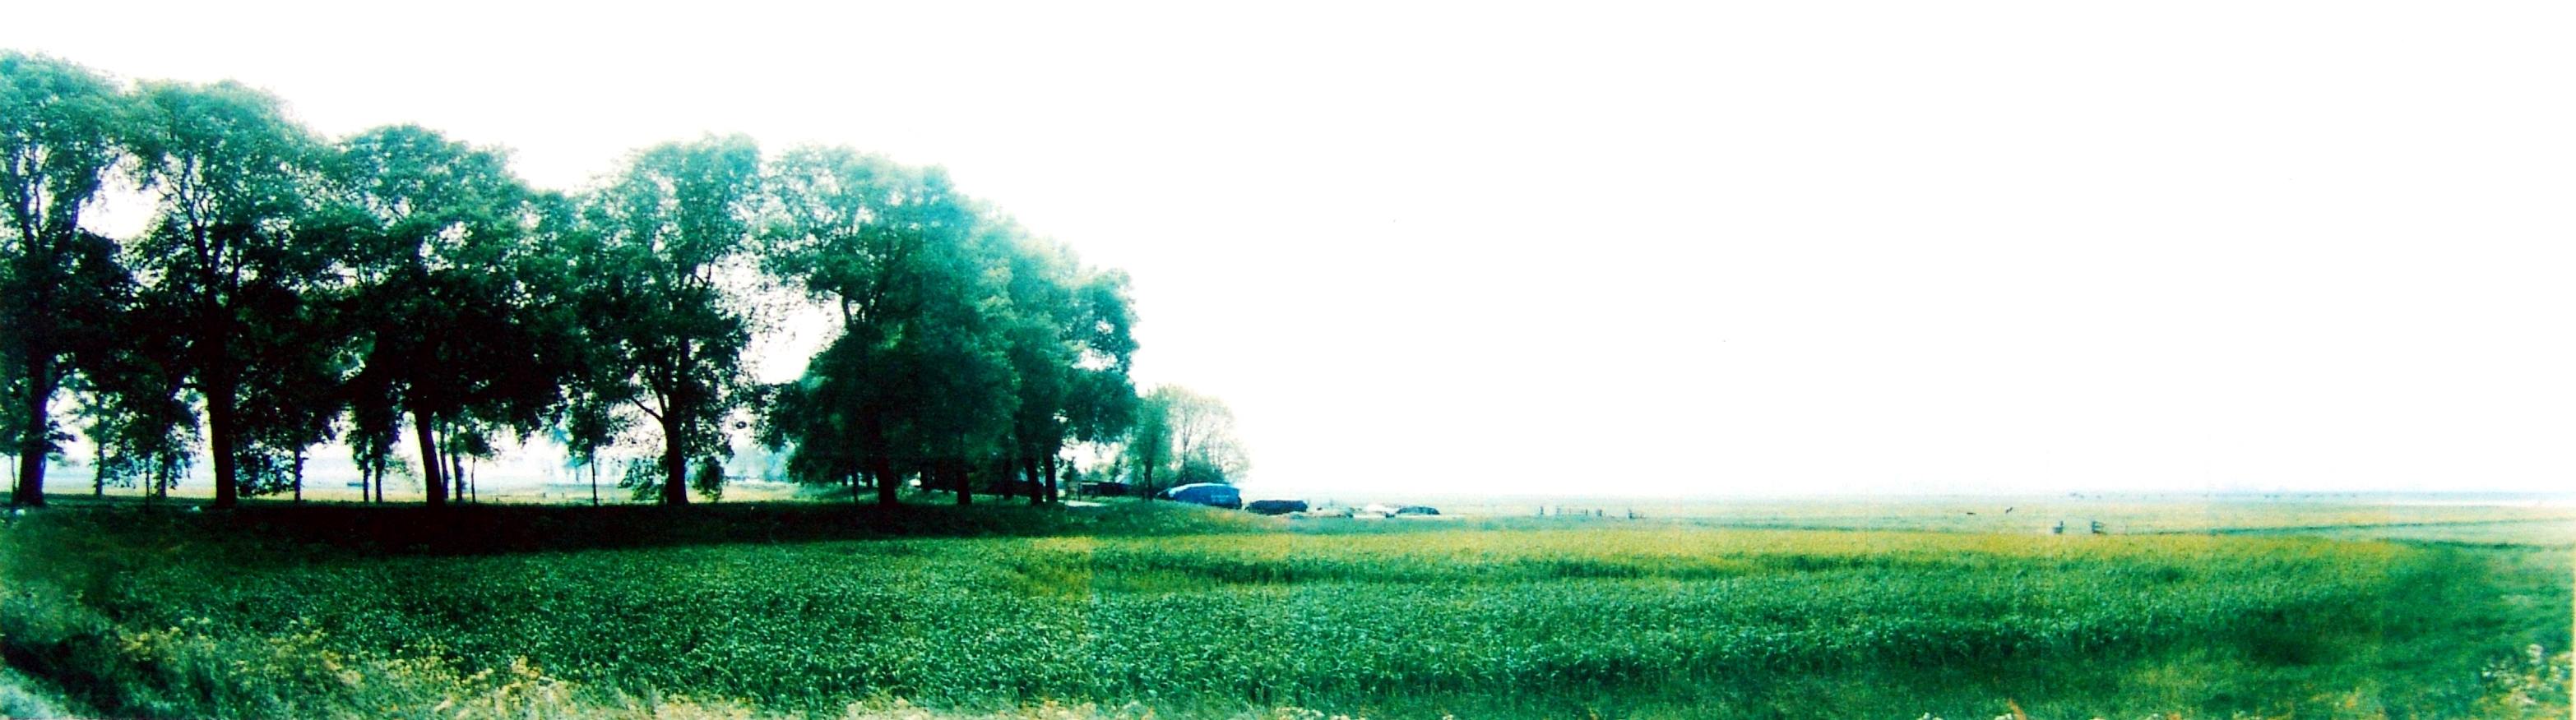 Jan Koster | Zwartendijke en de polder Dronthen, lente | 20 mei 1995 | 51 x 132 cm 